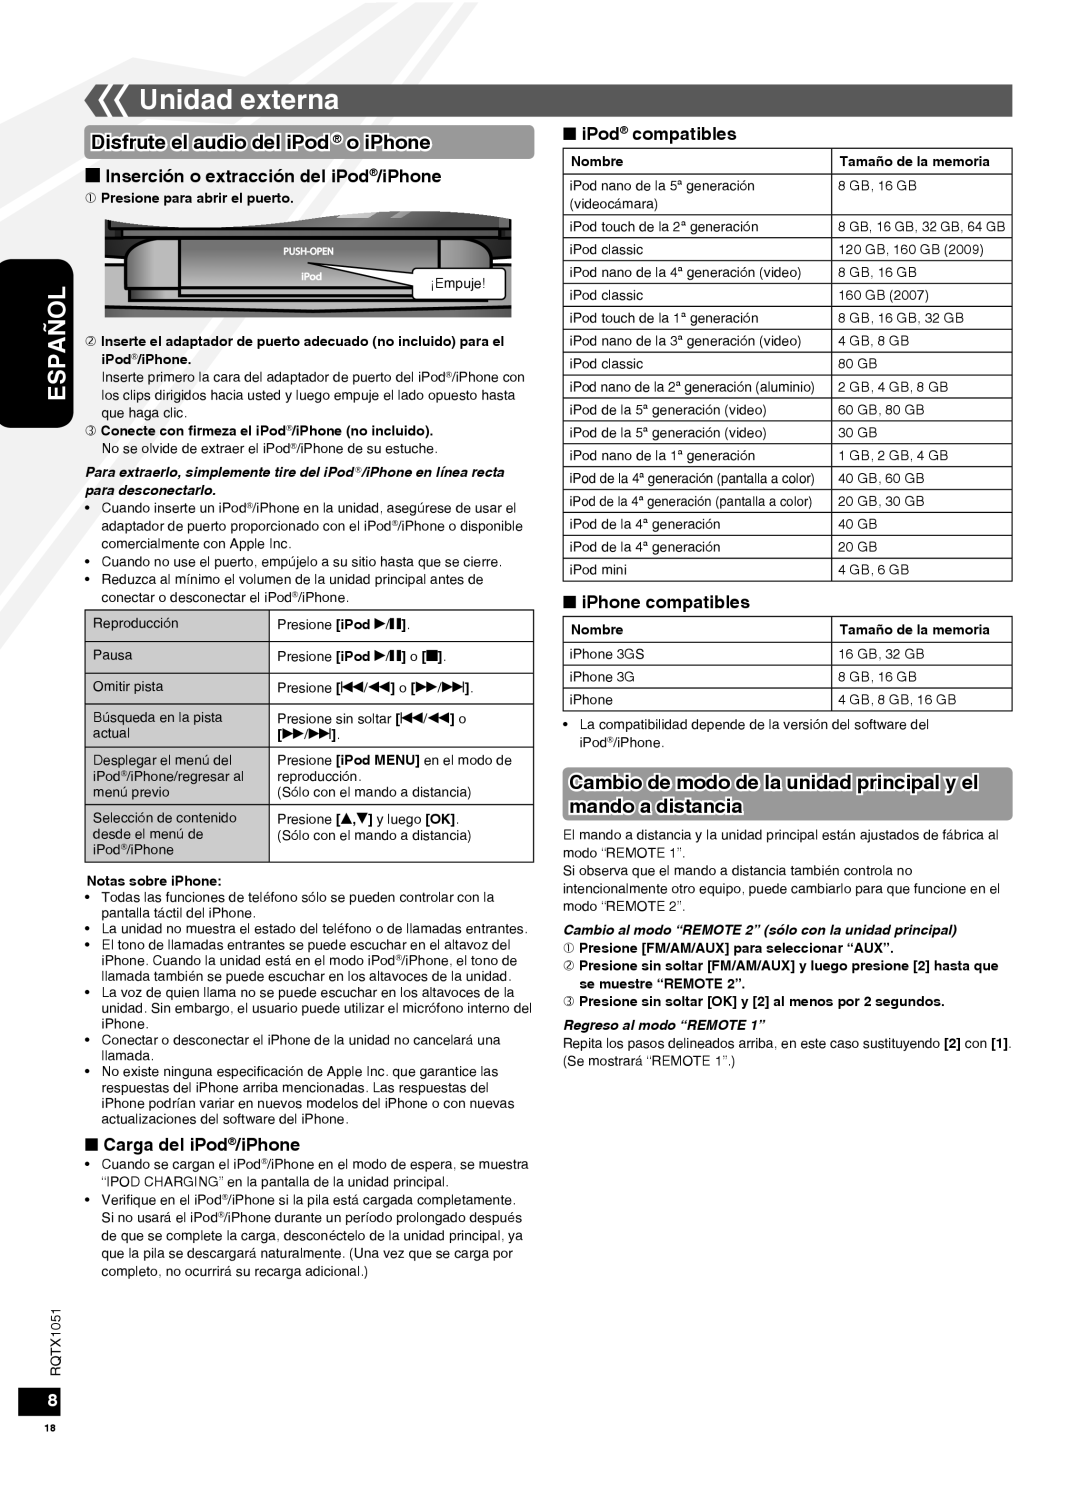 Panasonic SC-HC20 Unidad externa, Disfrute el audio deliPod o iPhone, g Inserción o extracción del iPod/iPhone, Español 